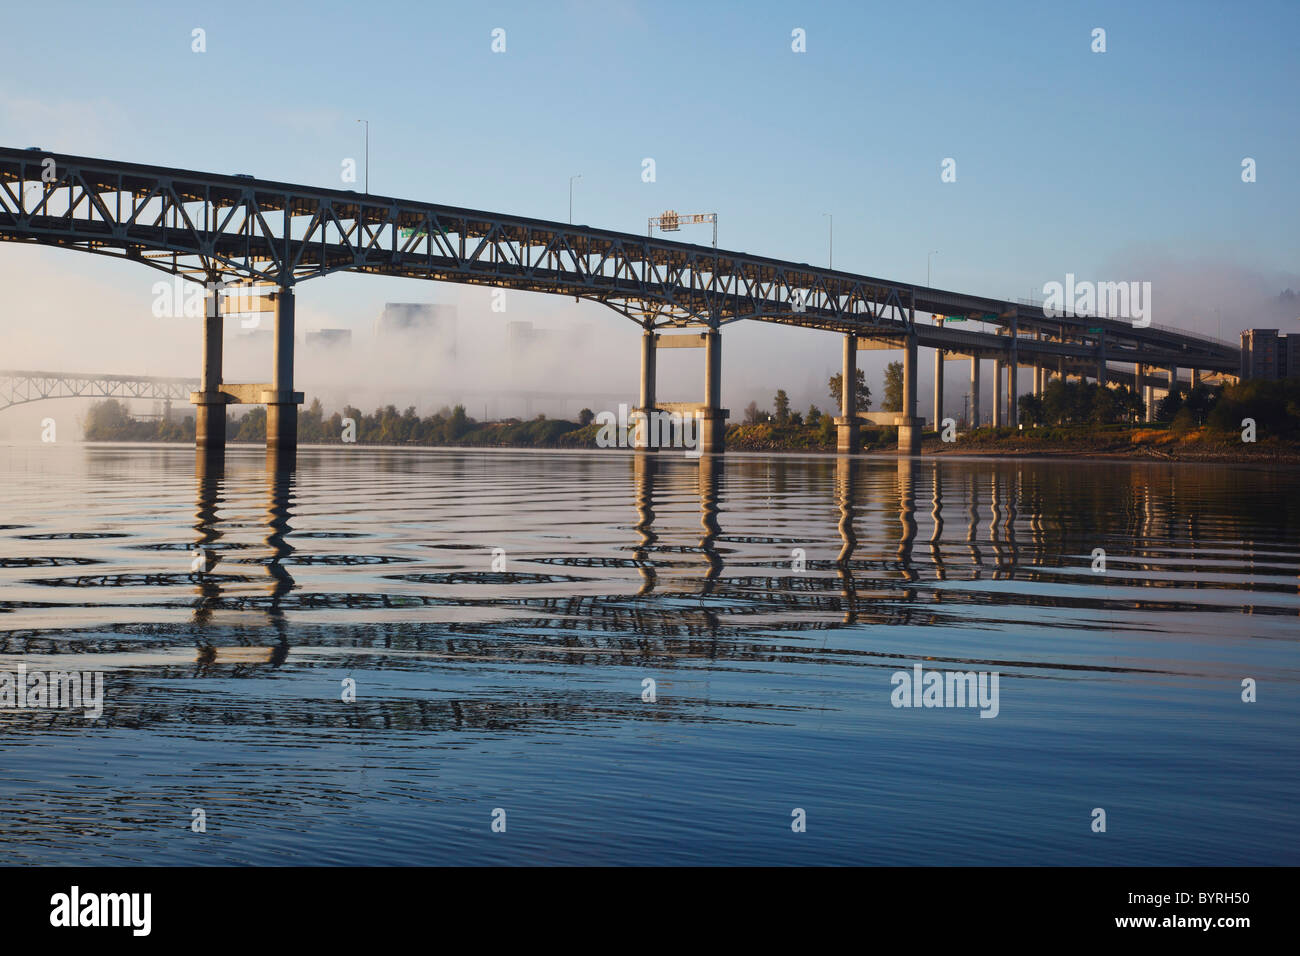 a bridge going over willamette river; portland, oregon, united states of america Stock Photo